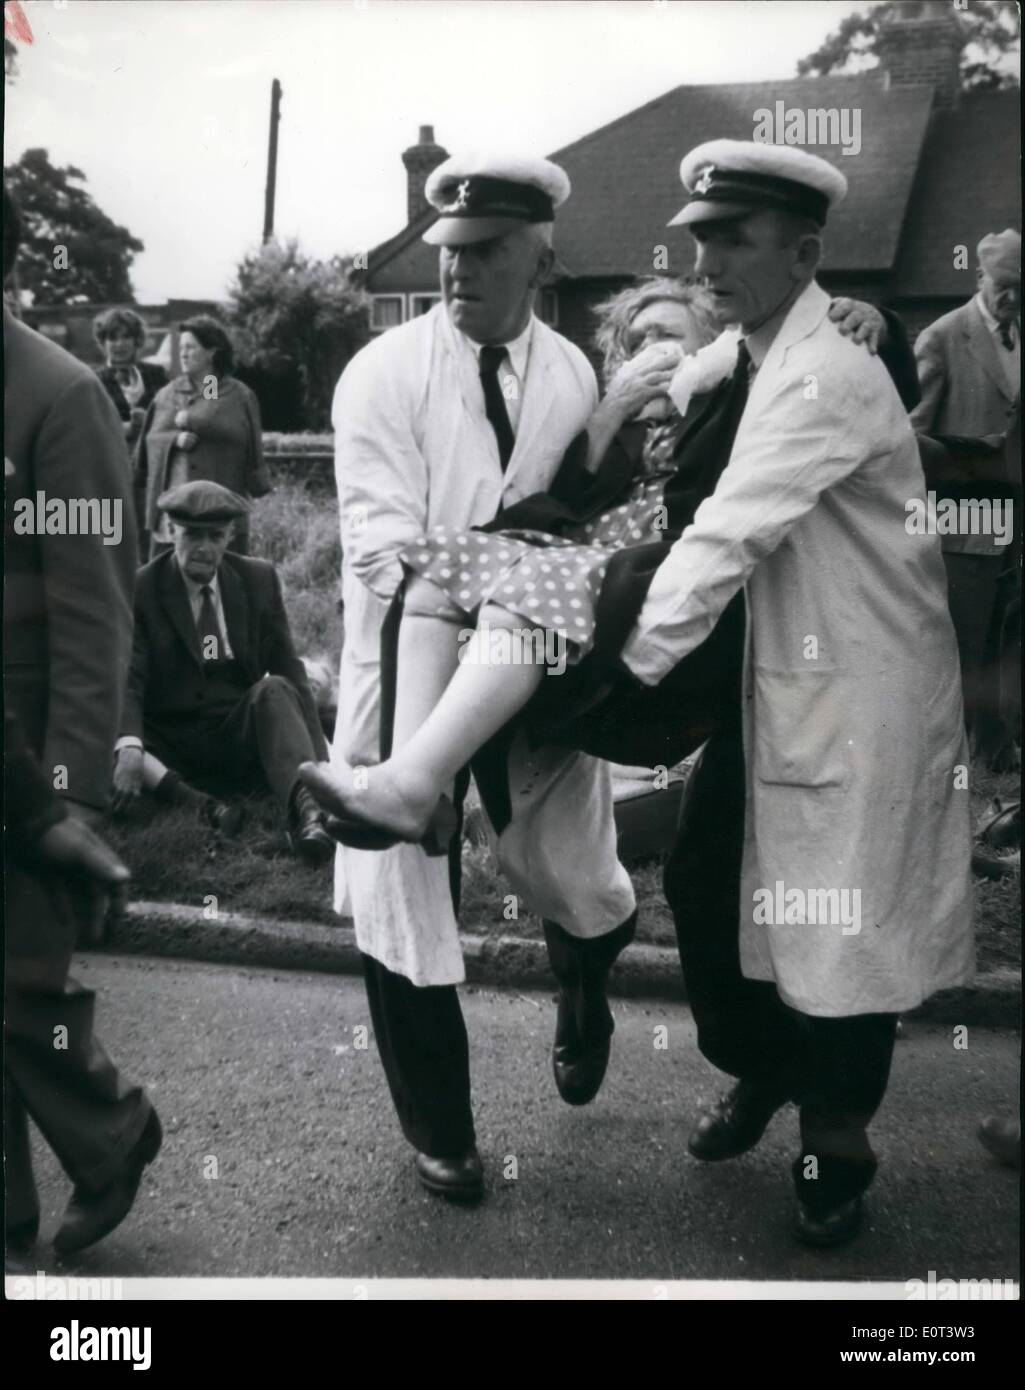 Sept. 09, 1960 - 46 Menschen verletzt in Bus und LKW-Absturz in der Nähe von Kent. sechsundvierzig Menschen, darunter Senioren und Babes in Armen, die nach eine Londoner Abkommen in einen Kopf auf Kollision mit einem Backstein-Lkw unterwegs Magd-Stein bei Huxley Mais, in der Nähe von Sicoup, Kent wurde heute ins Krankenhaus gebracht. Ressourcen-Estruggled in der Masse der Trümmer, die Ambulanz für Passagiere und Fahrer zu befreien wurden stürzte auf der Acene während der verletzten lag am Straßenrand. Foto zeigt, dass ein Rentner, der bei dem Absturz verletzt wurde von Krankenwagen Männer zum wartenden Krankenwagen für ihre Entfernung zum Krankenhaus getragen wird. Stockfoto